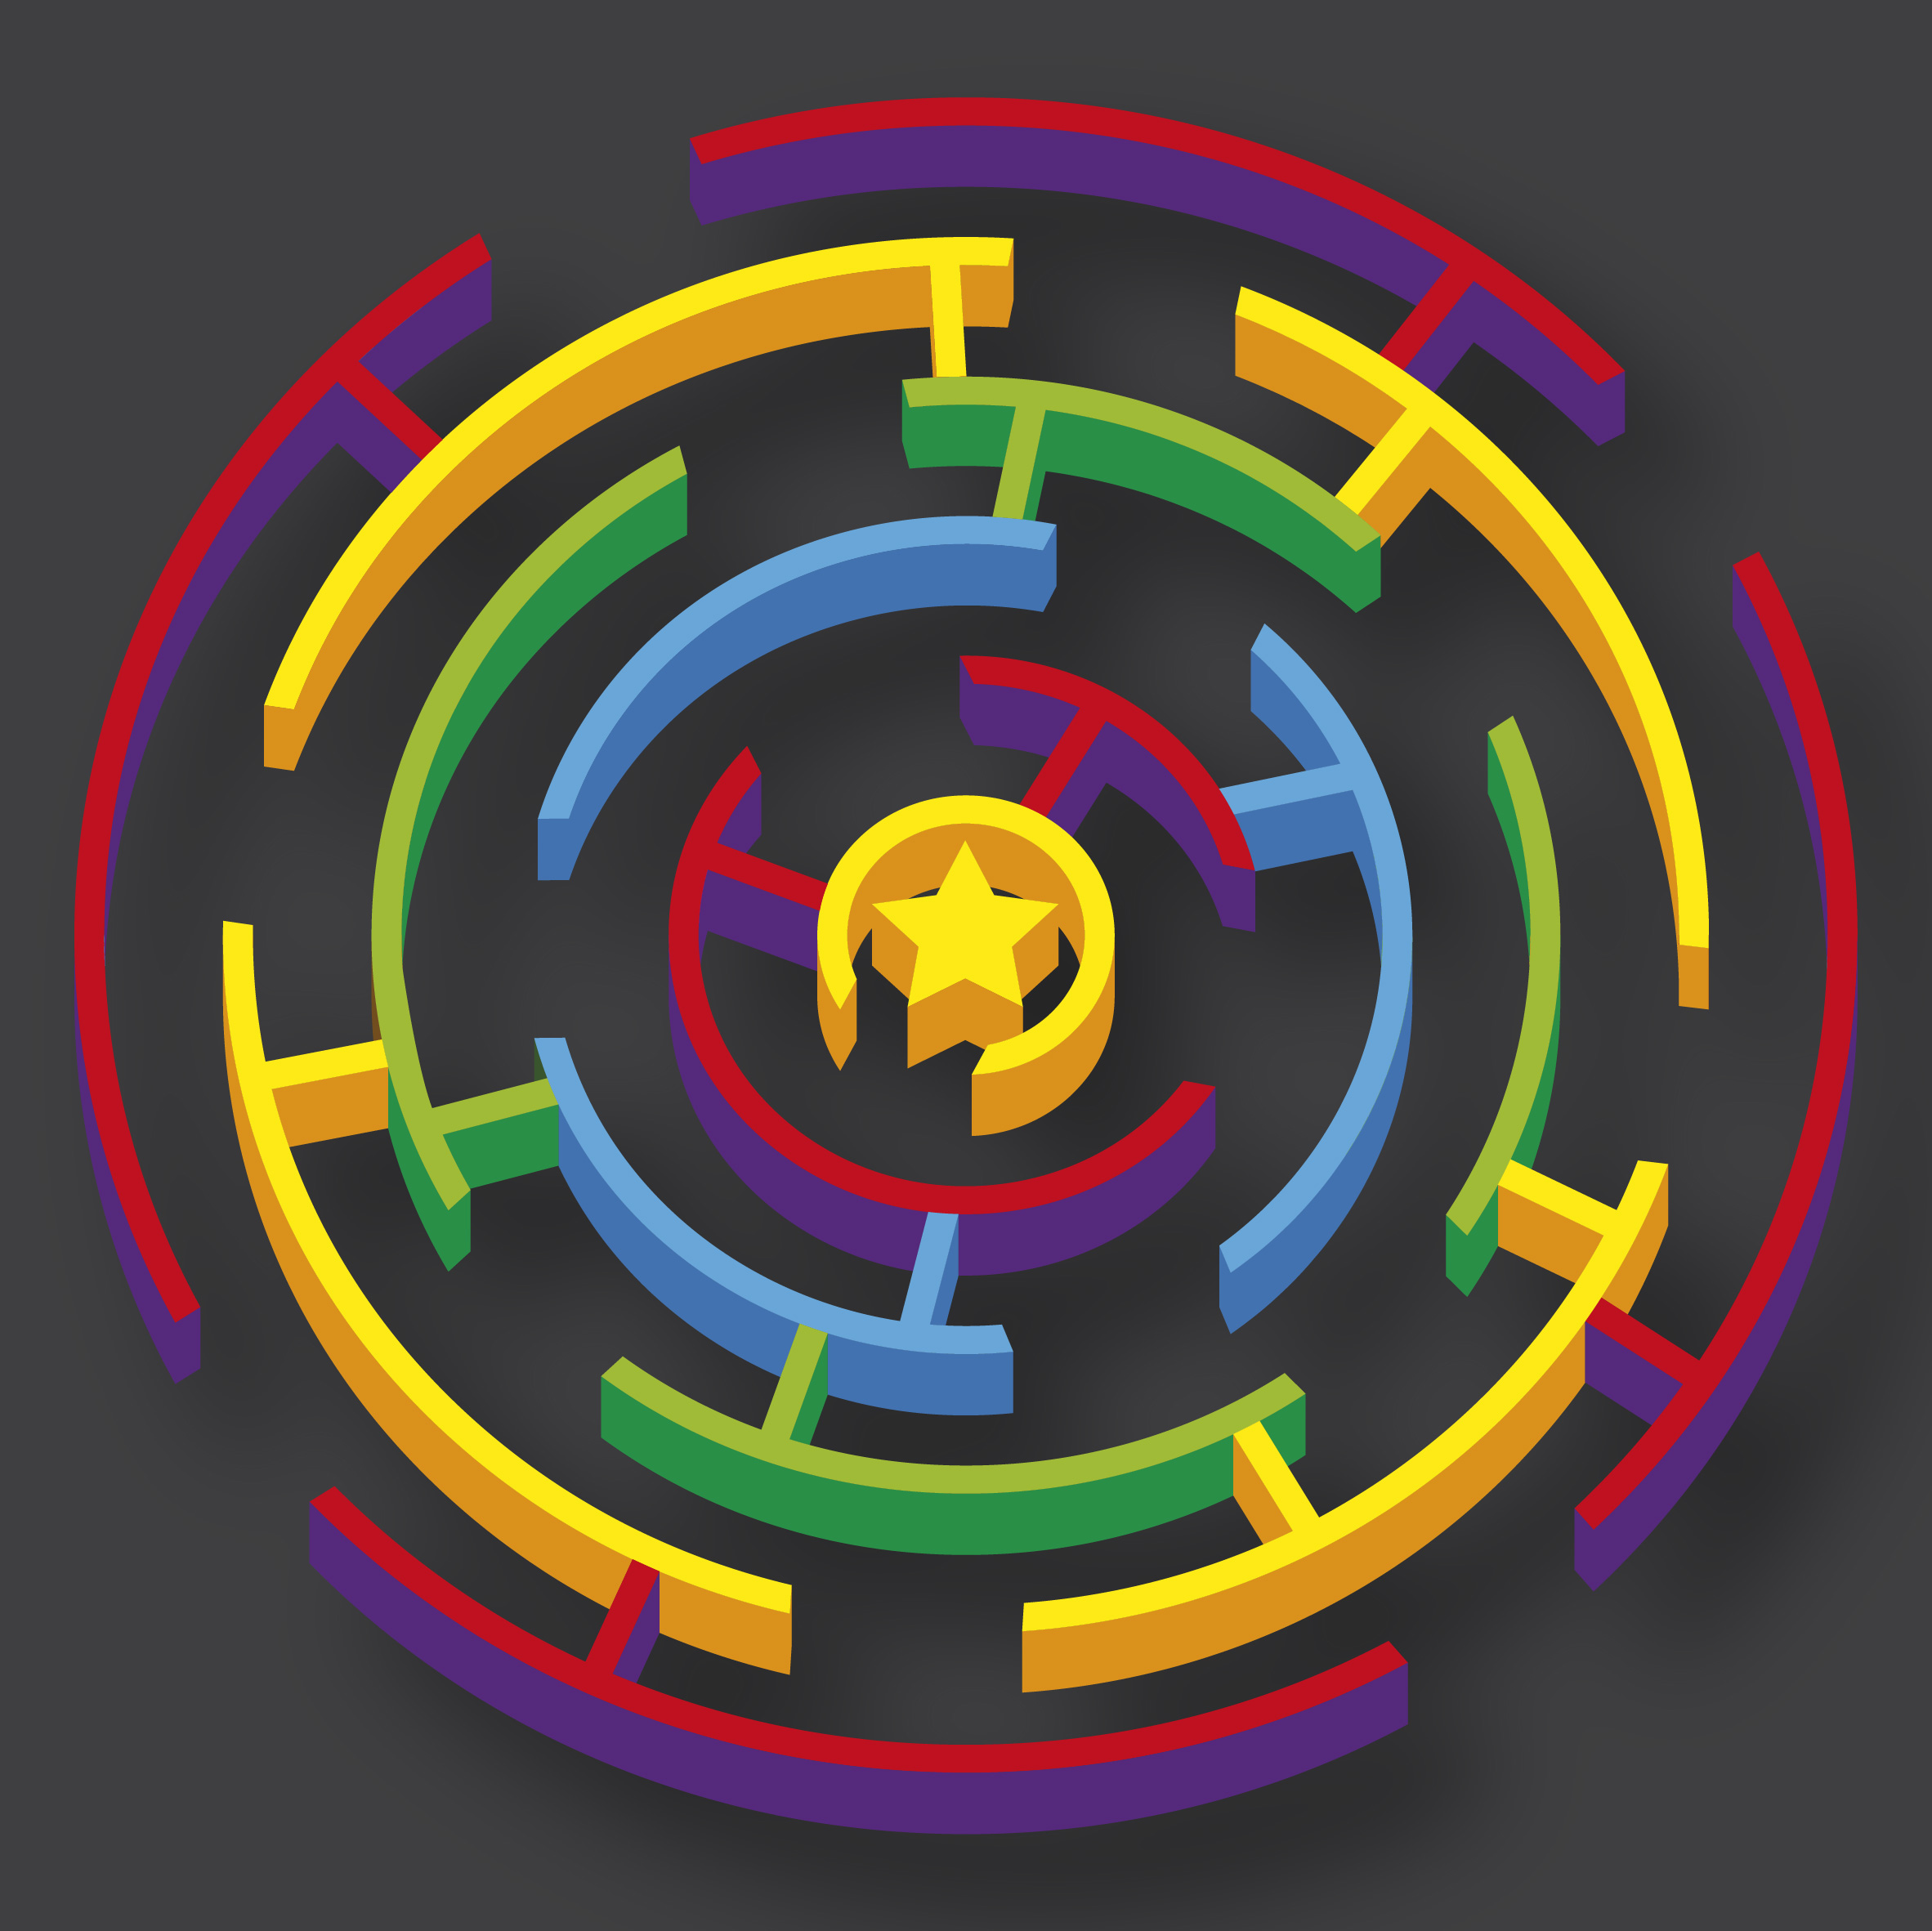 3D Circular Maze